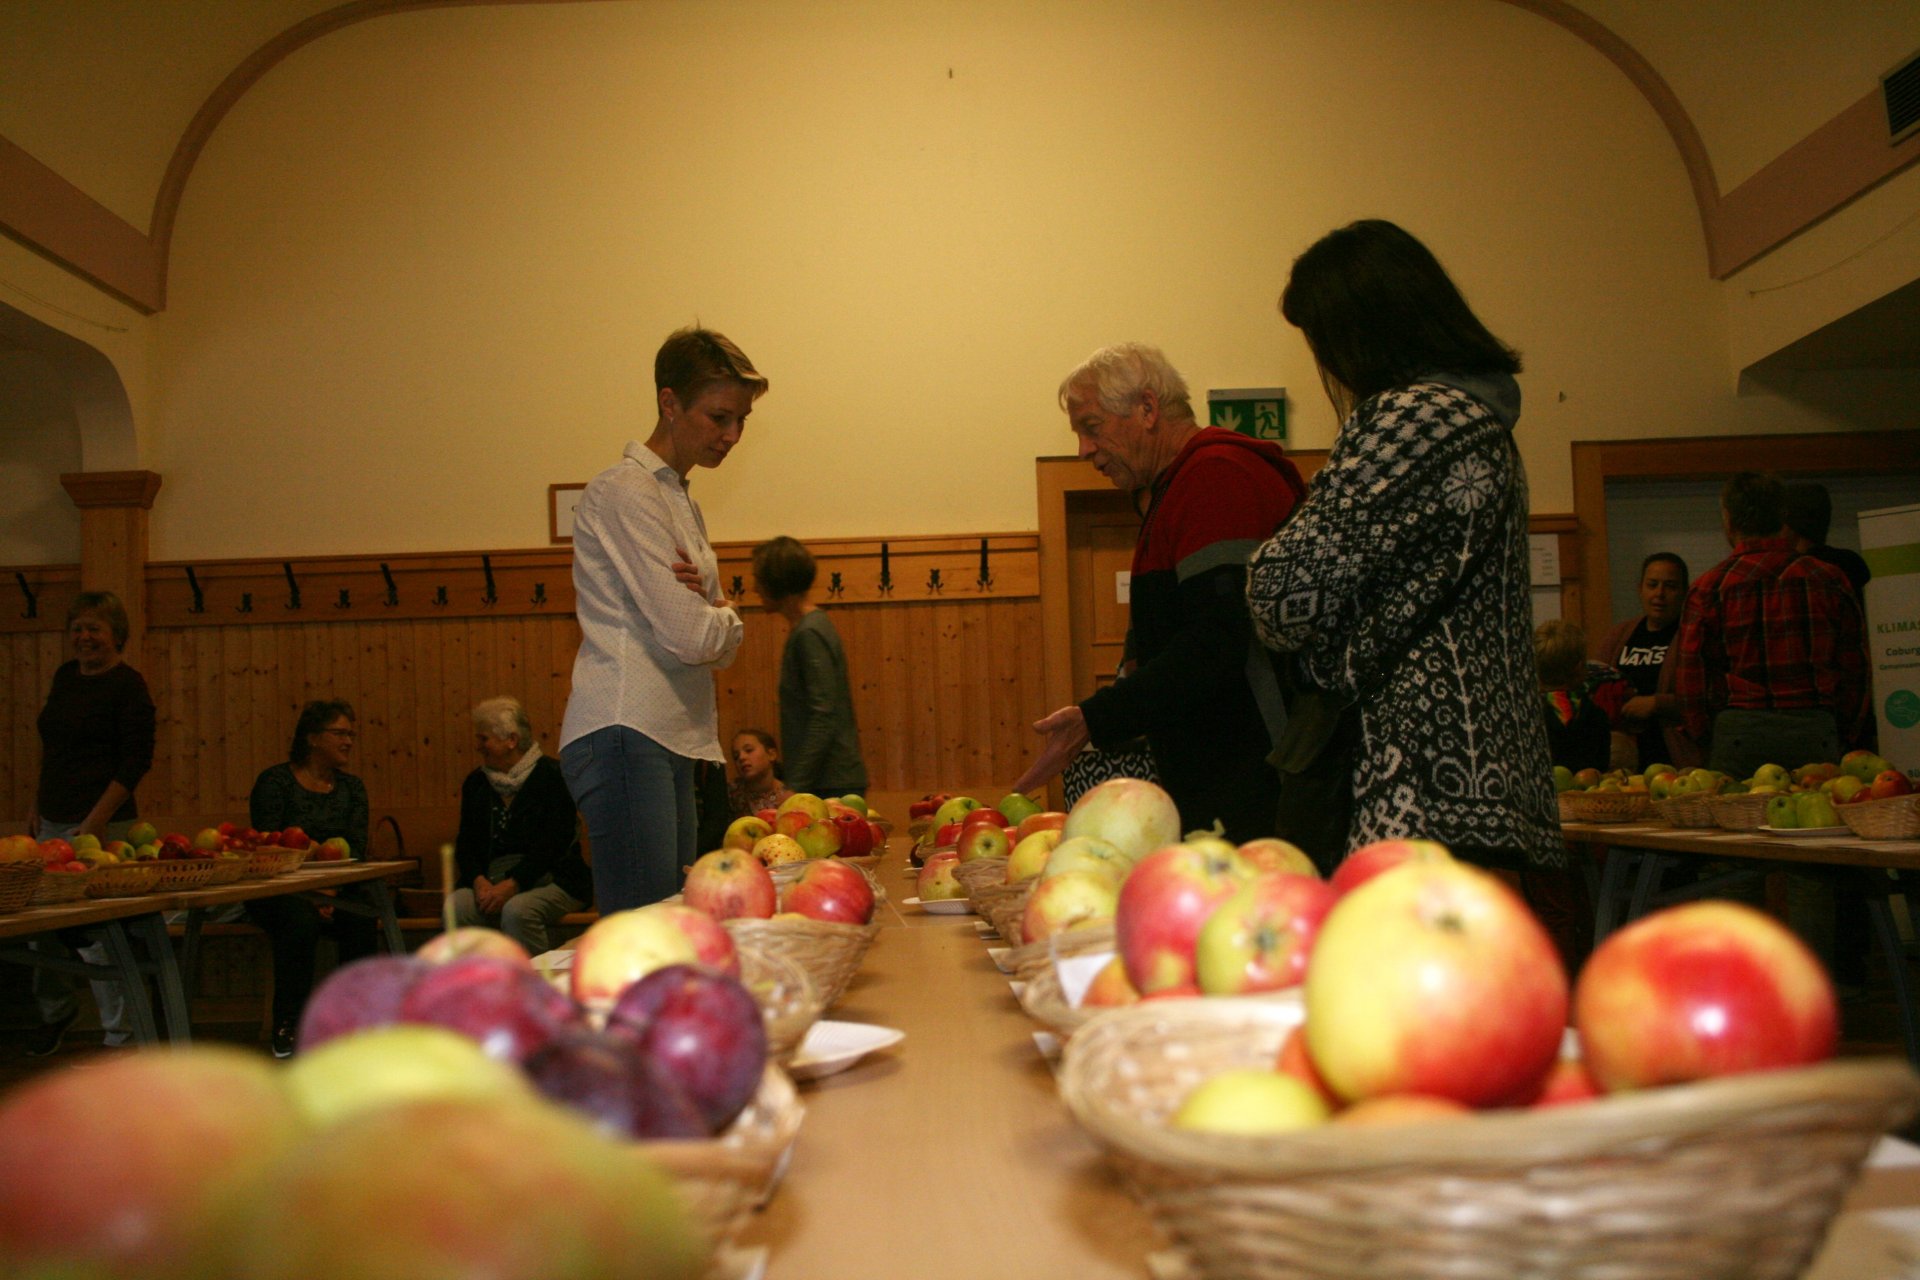 Seltene Apfelsorten in Ahlstadt